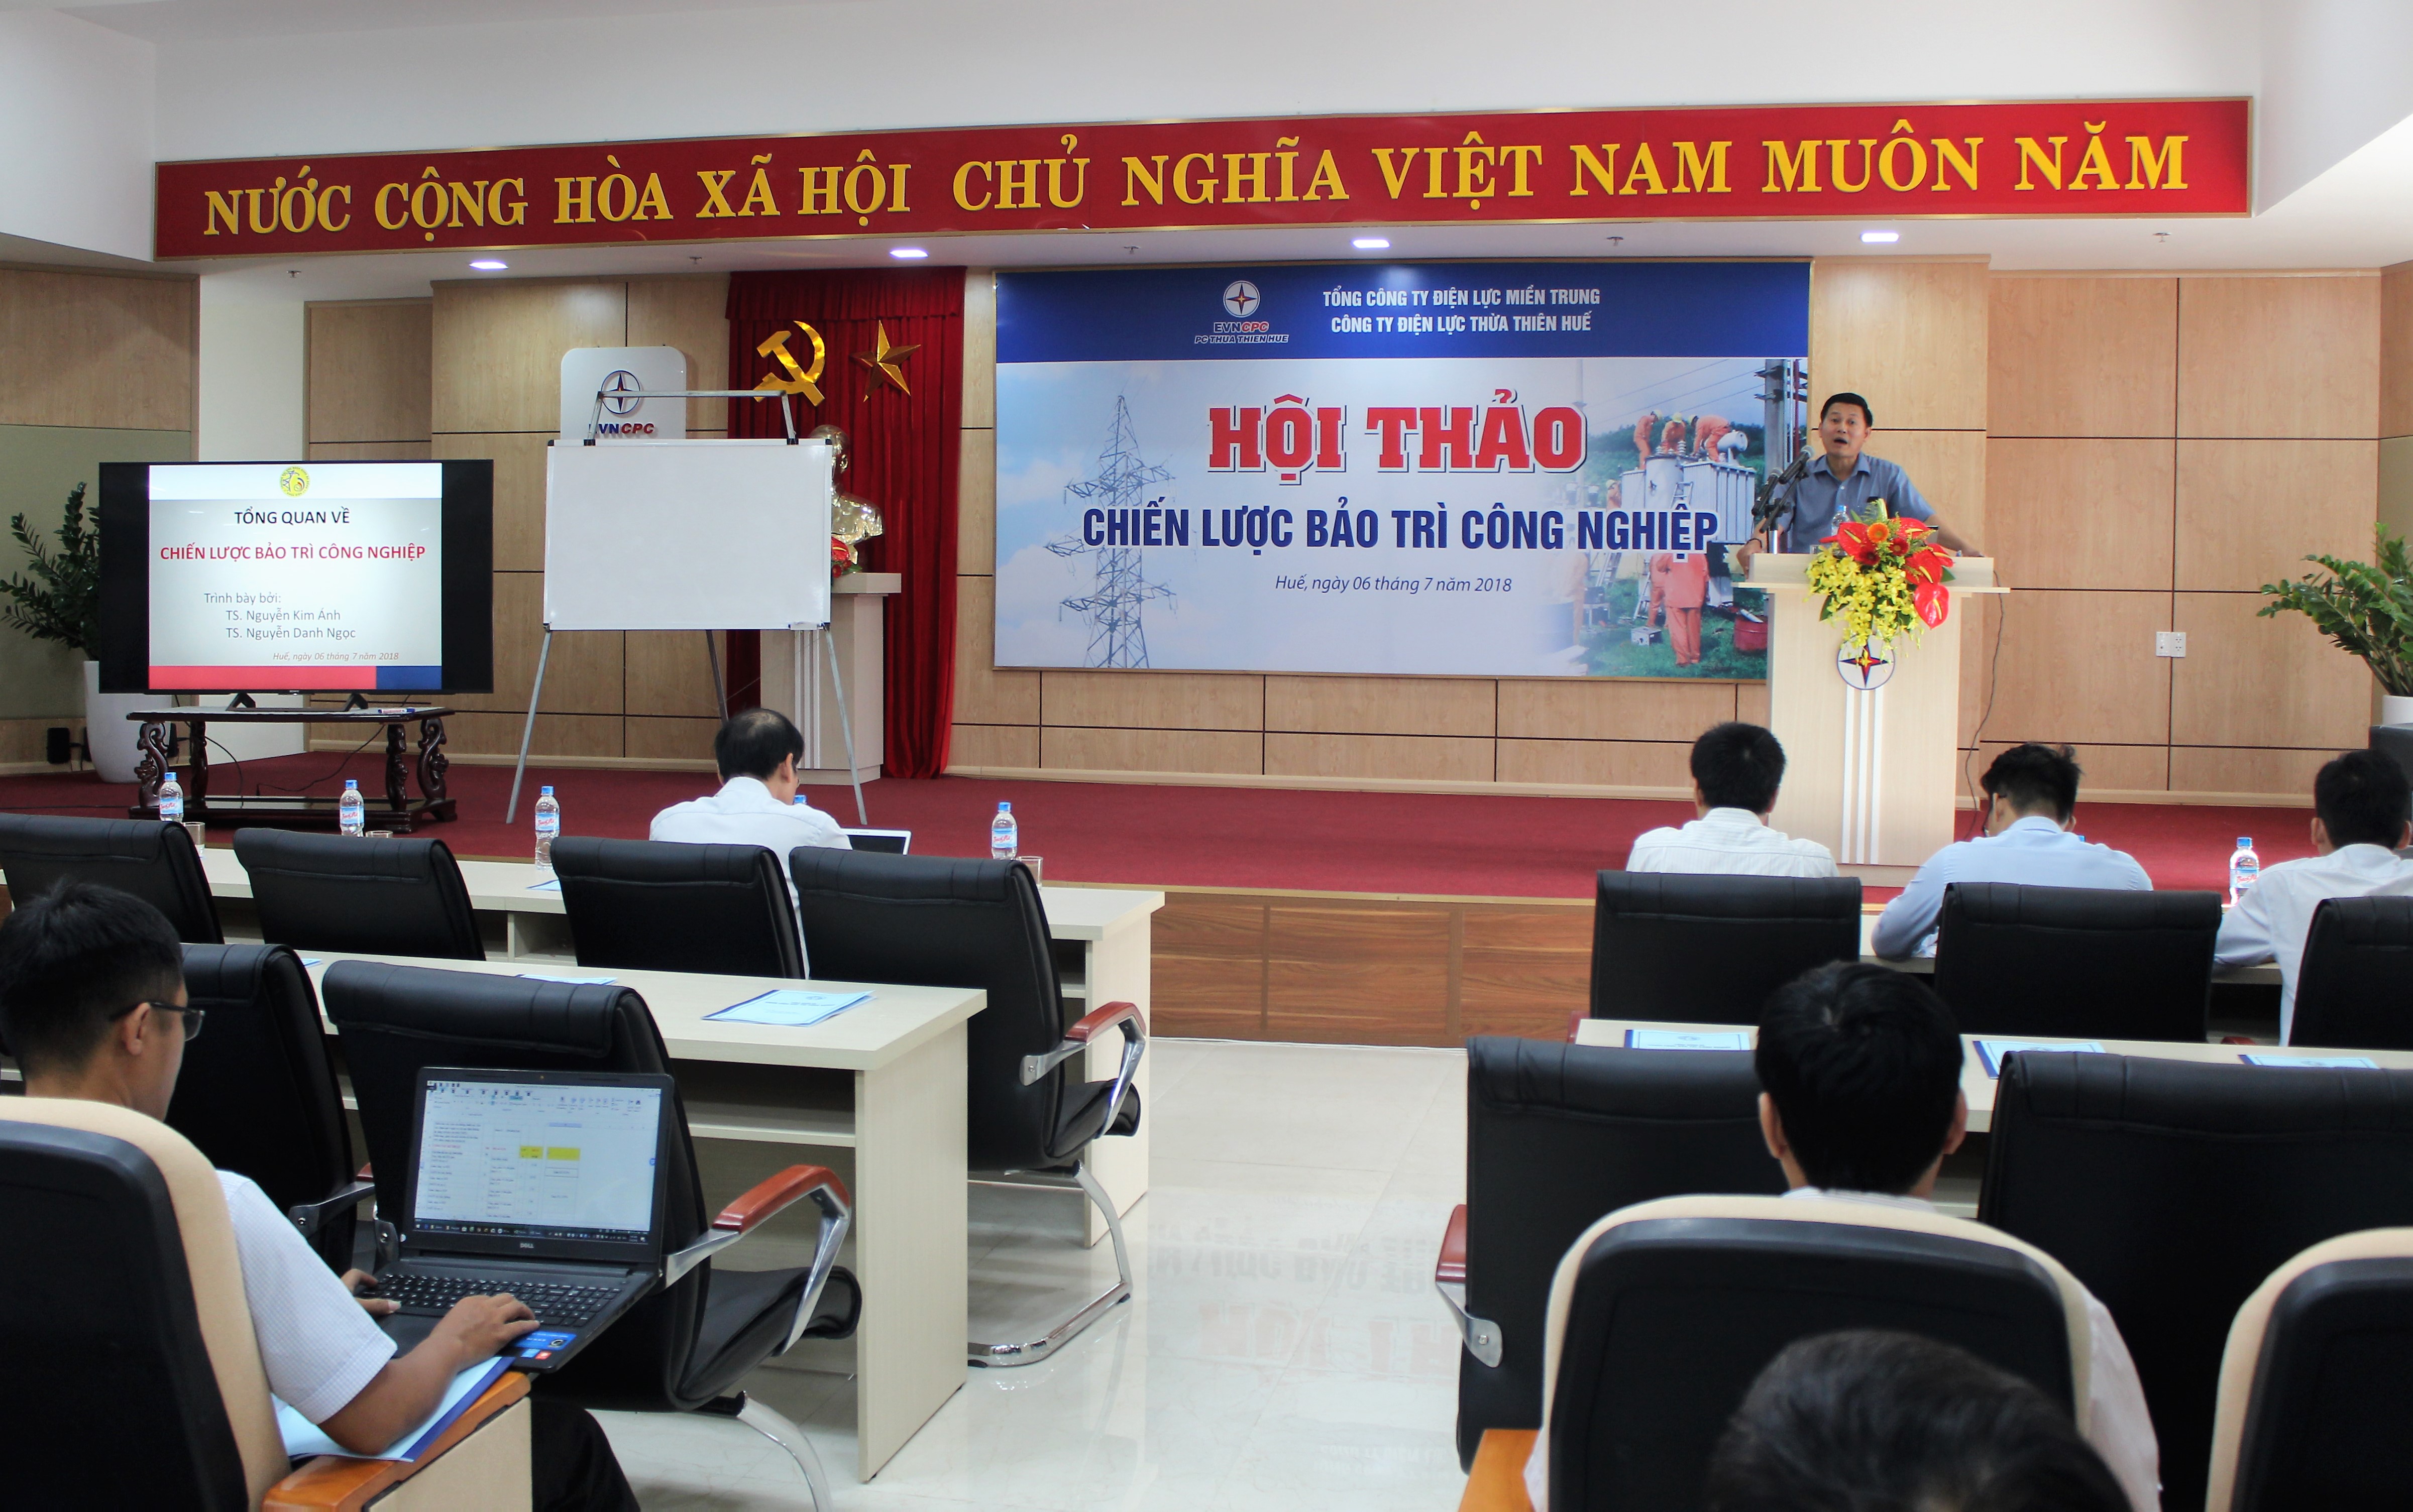 PC Thừa Thiên Huế tổ chức hội thảo Chiến lược bảo trì công nghiệp